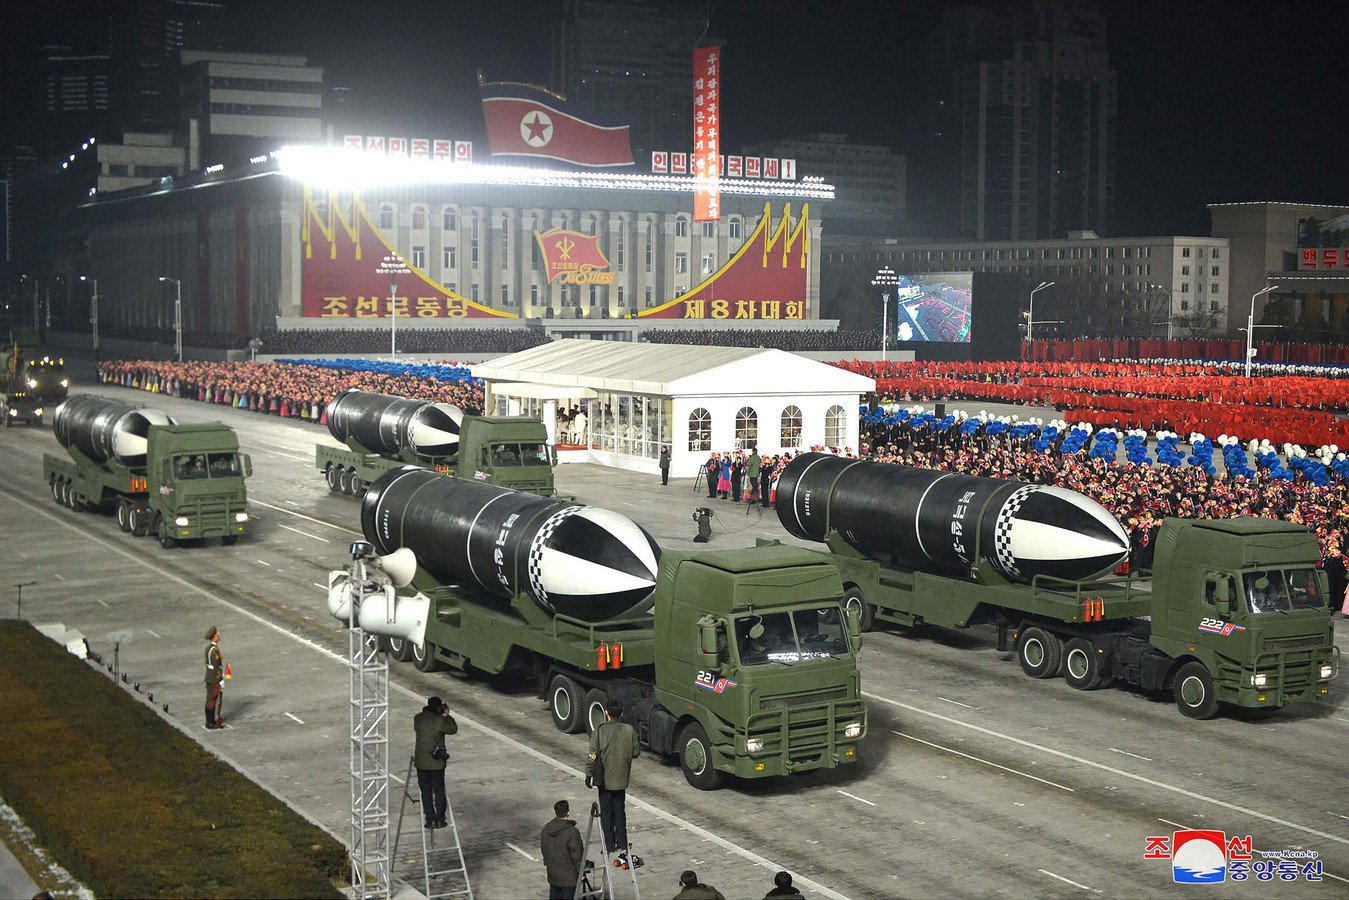 Tijdens de parade werd ook de Hwasong-17 getoond, de grootste intercontinentale ballistische raket die Noord-Korea voor zover bekend heeft.